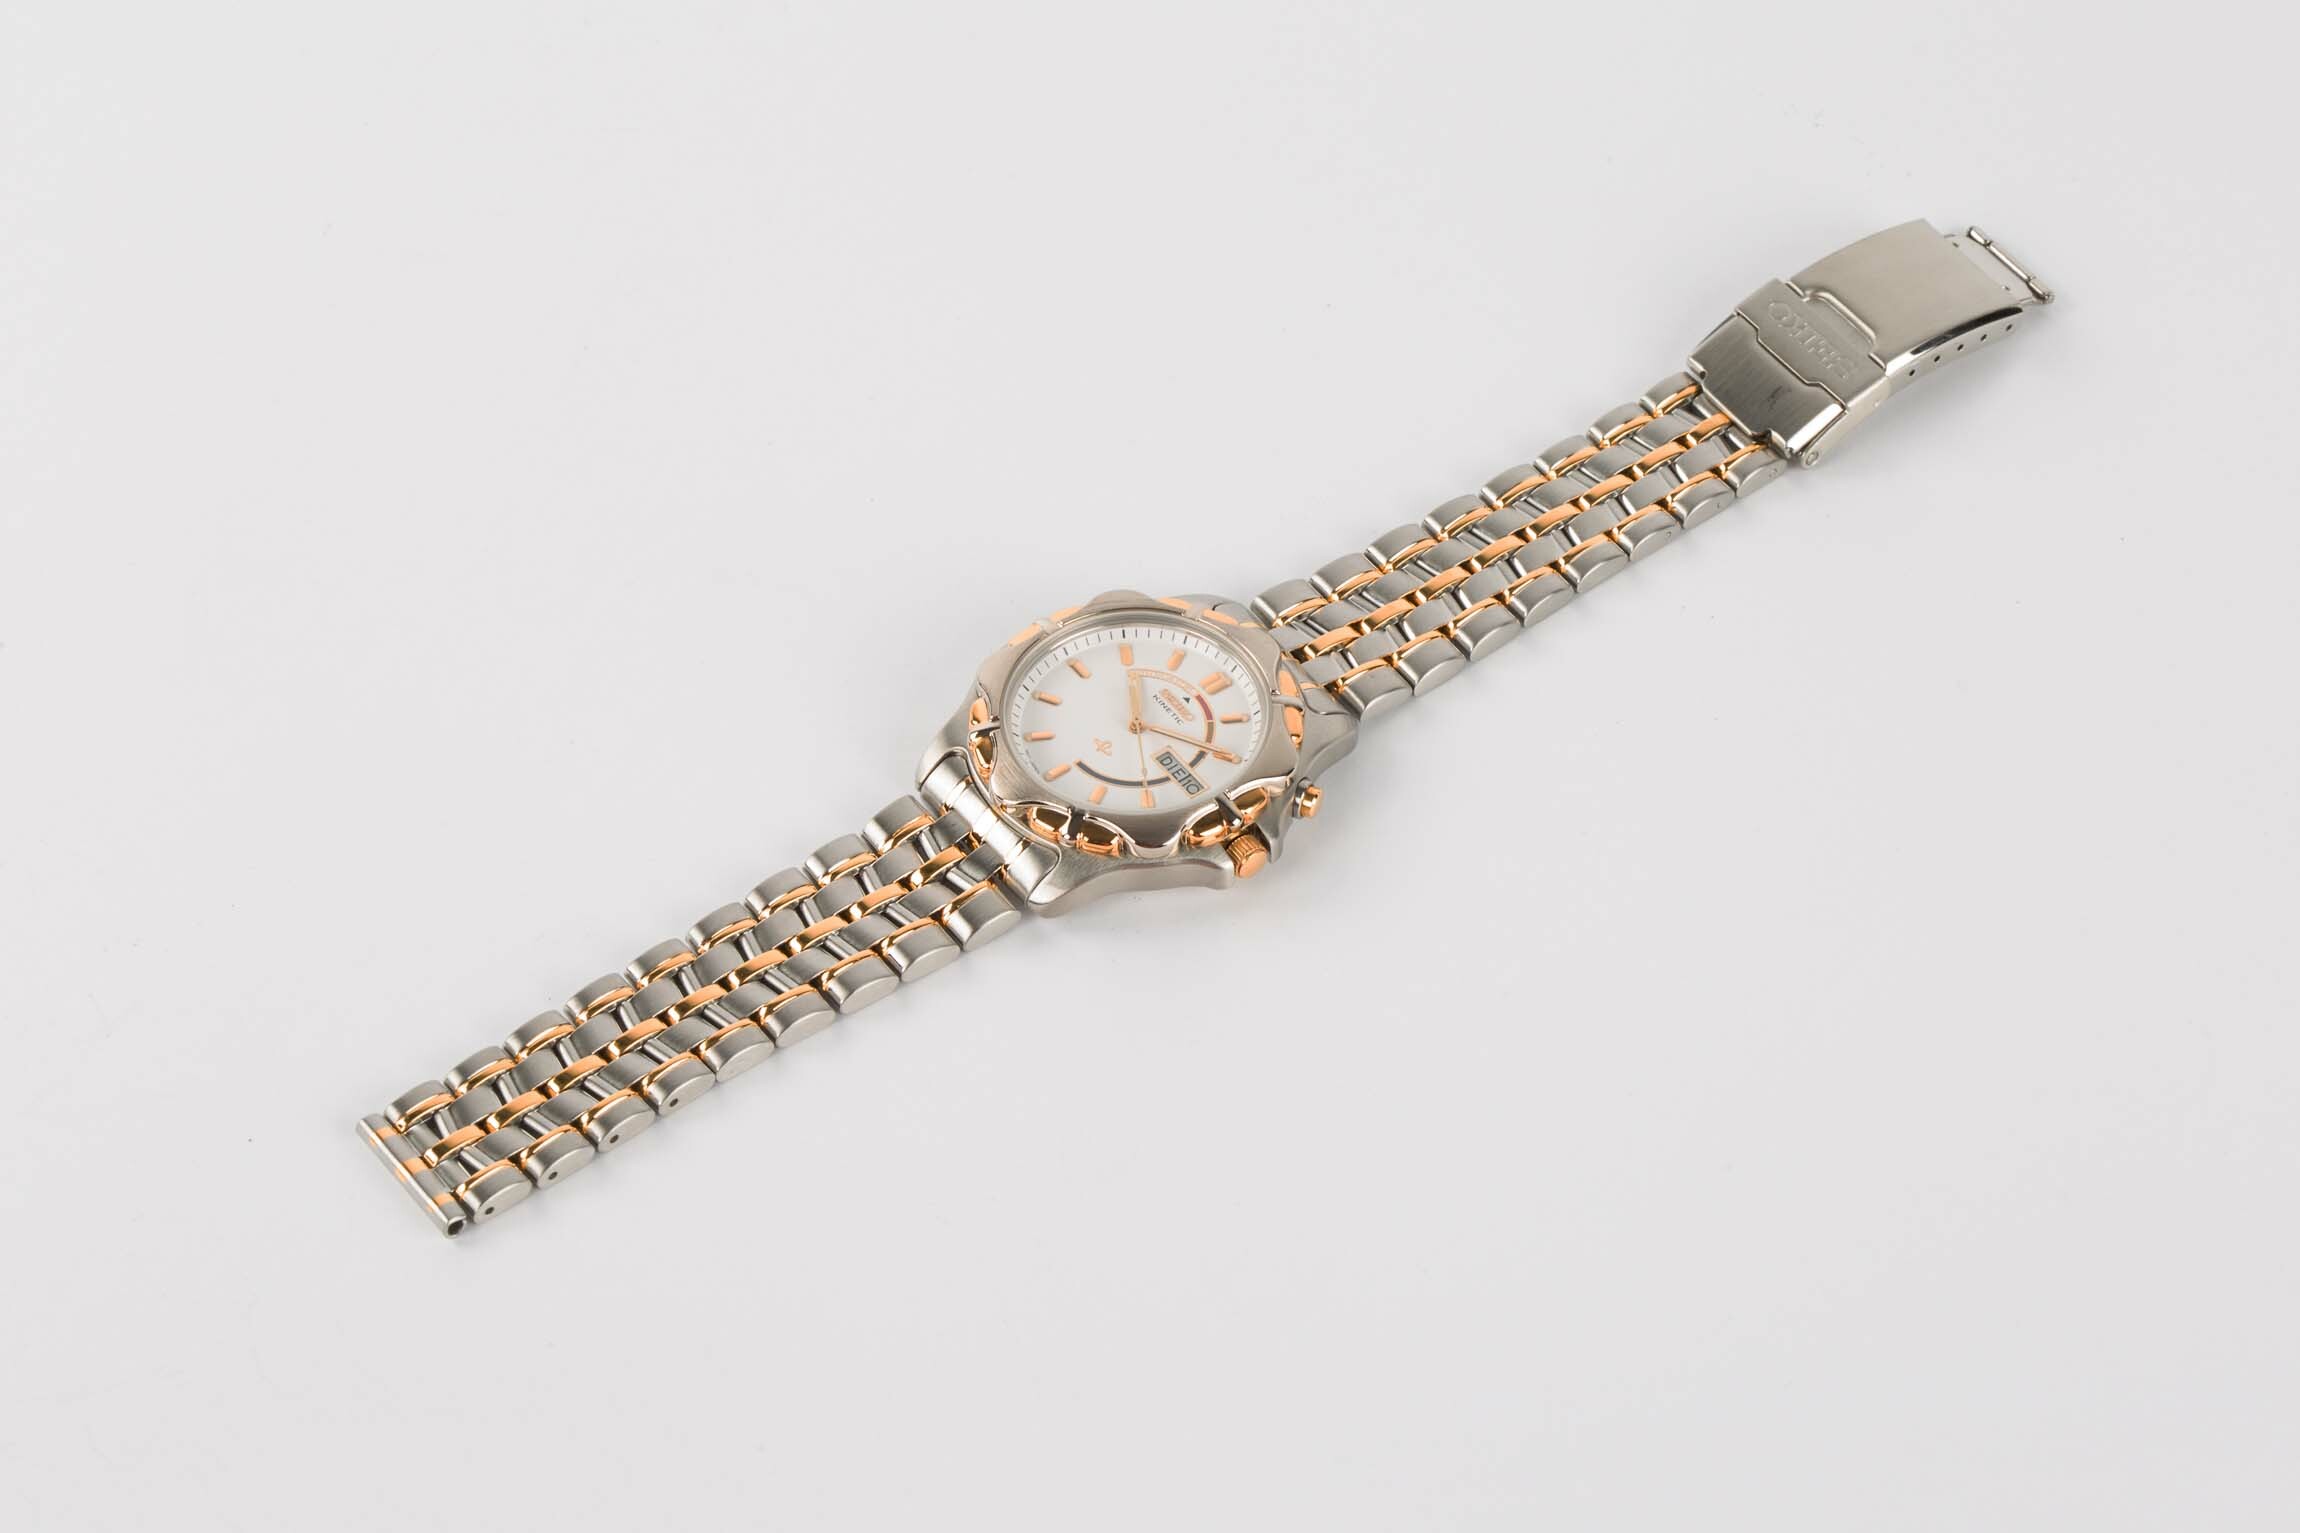 Armbanduhr, Seiko, Japan, 1995 (Deutsches Uhrenmuseum CC BY-SA)